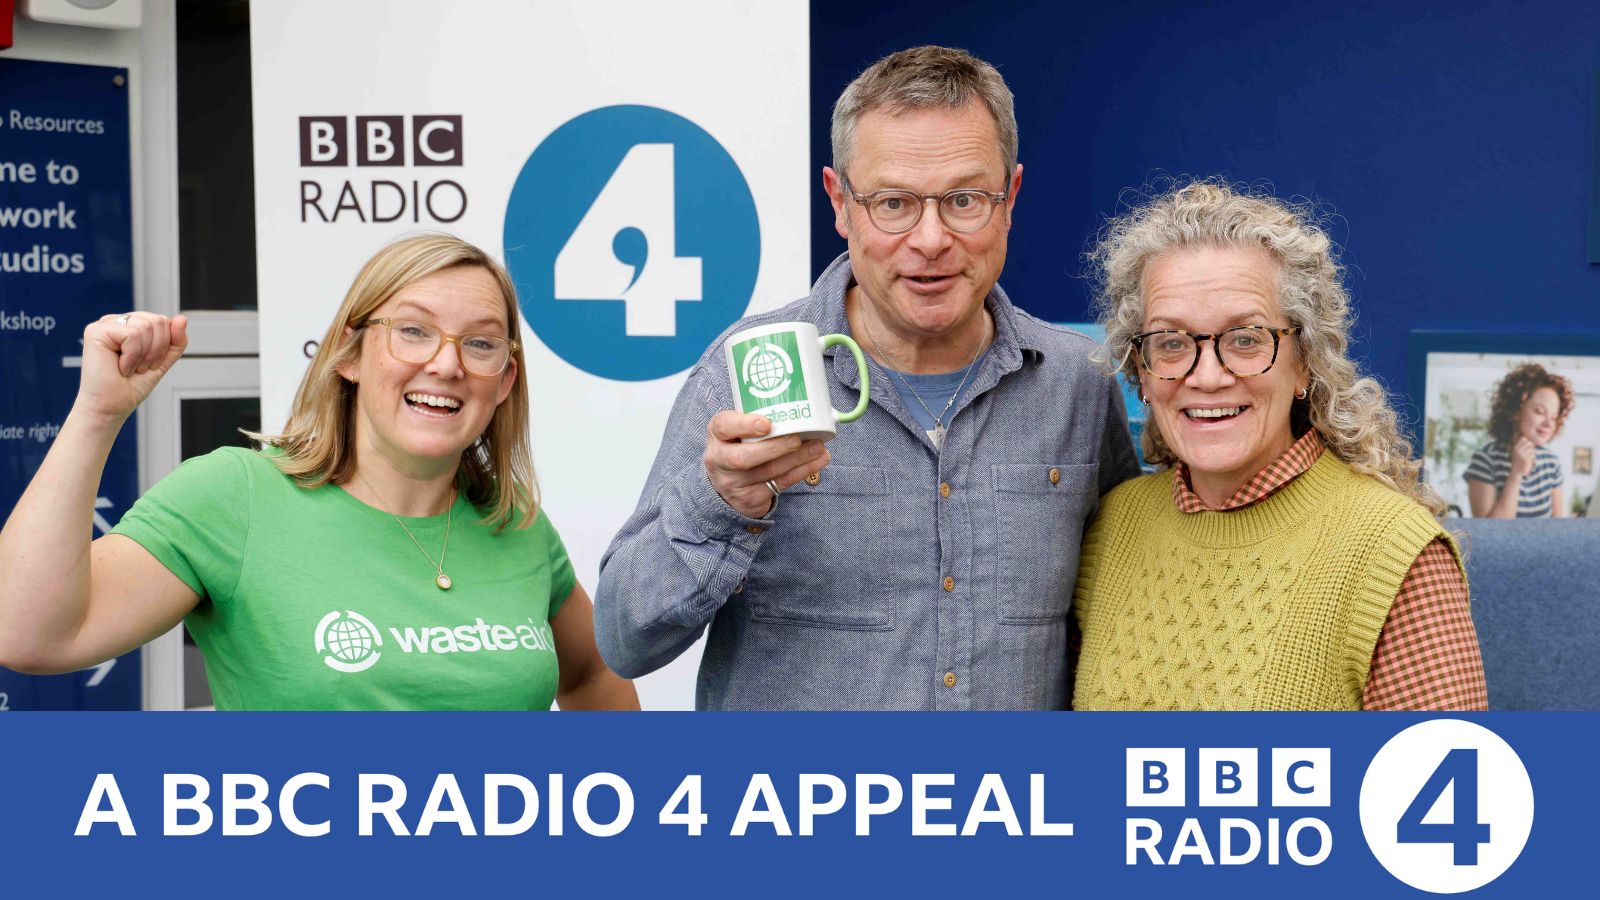 WasteAid Teams Up With BBC Radio 4